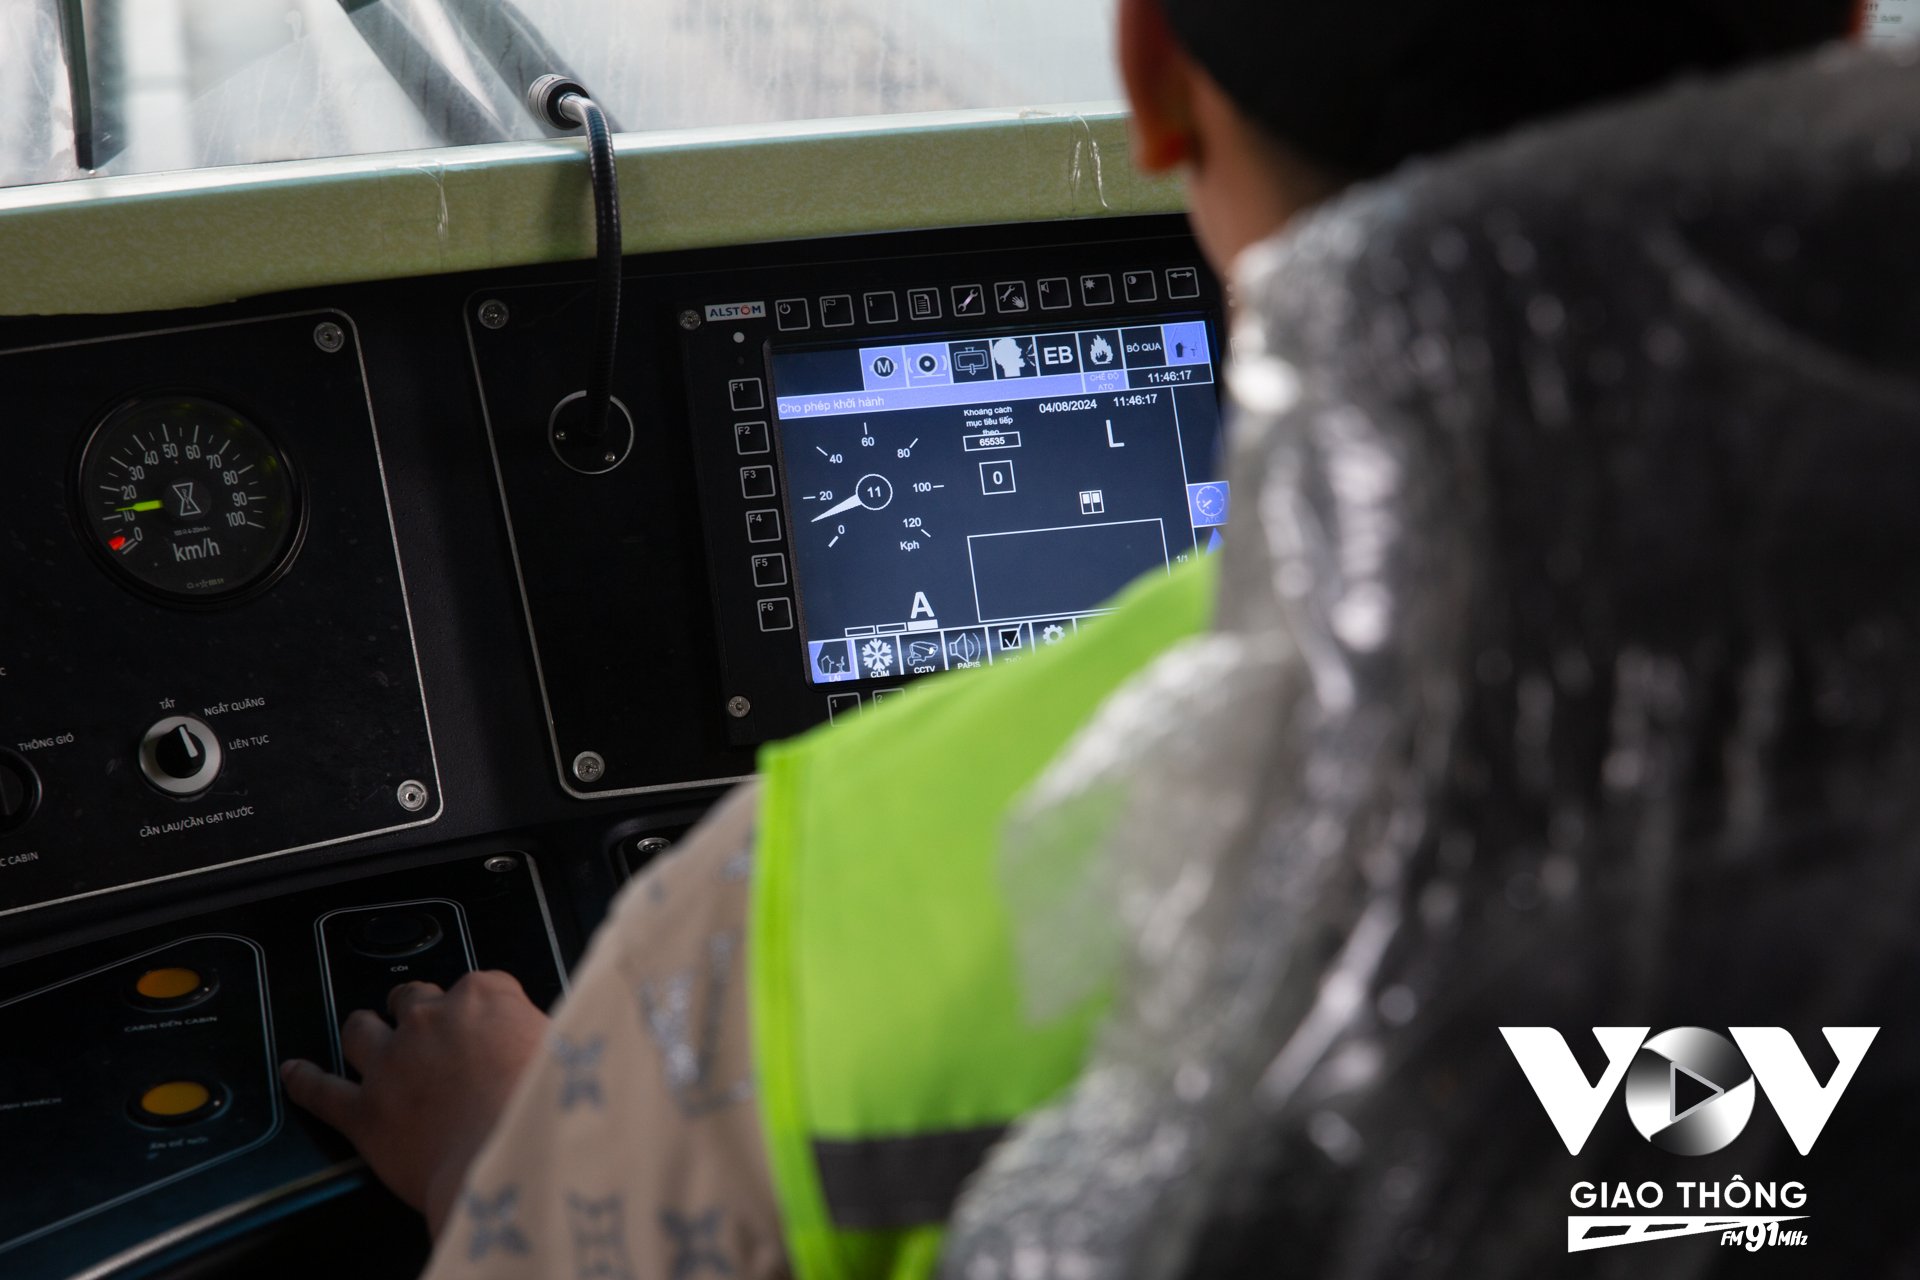 Trang thiết bị trong buồng lái tàu rất hiện đại, đòi hỏi người lái tàu phải có kinh nghiệm xử lý và nhận biết các tình huống, cảnh báo khi bất ngờ xảy ra